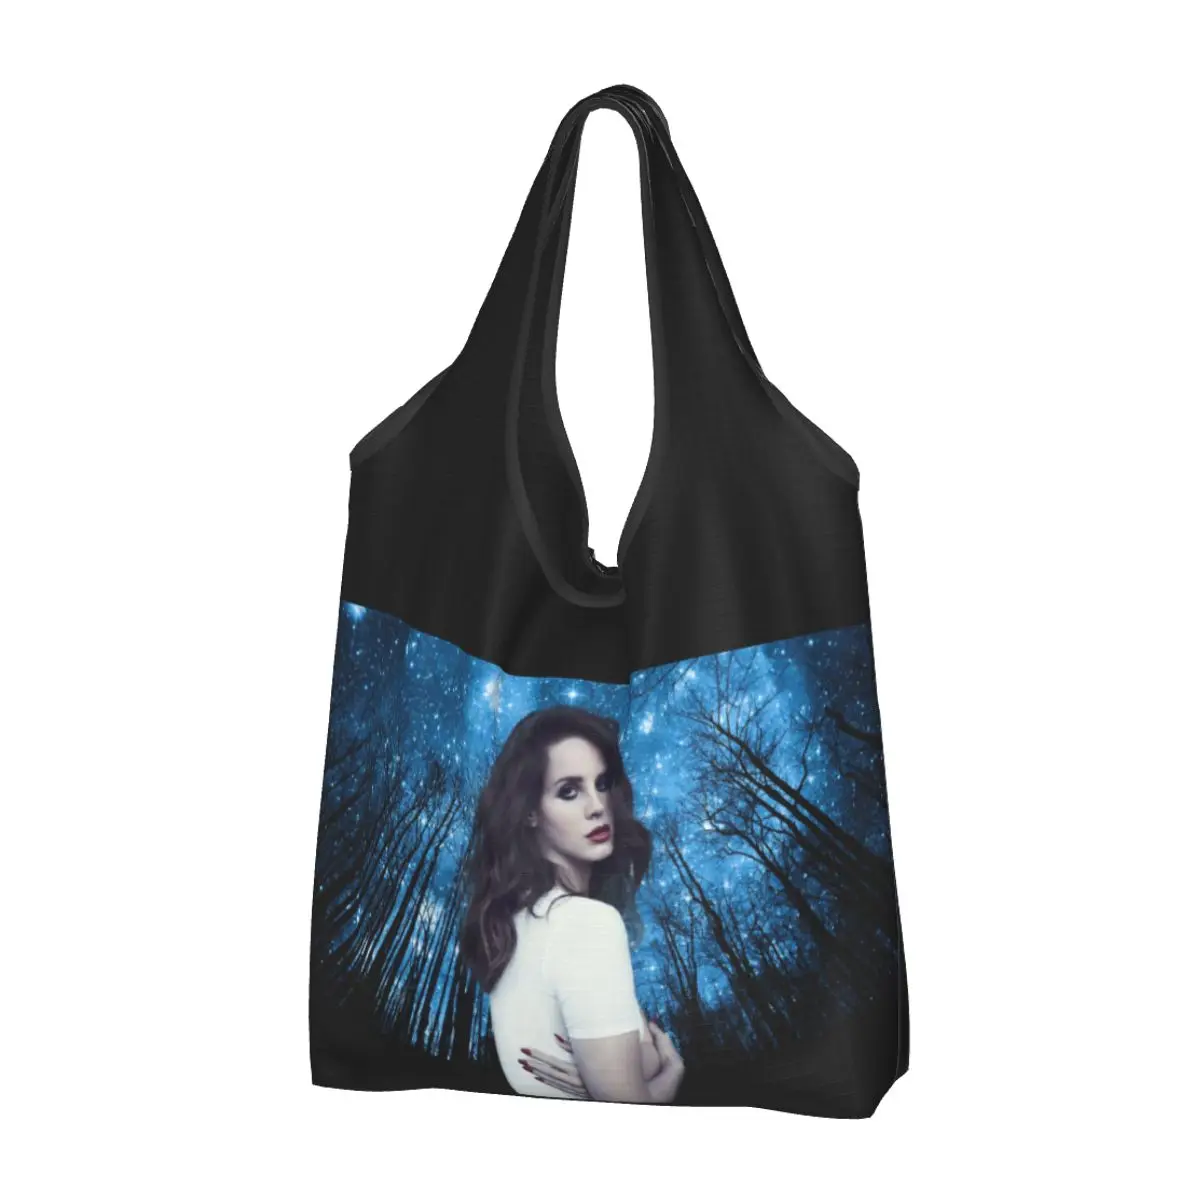 Продуктовая сумка Lana Del Rey Прочная большая многоразовая Складная экосумка для покупок для музыкальных исполнителей, которую можно стирать с чехлом